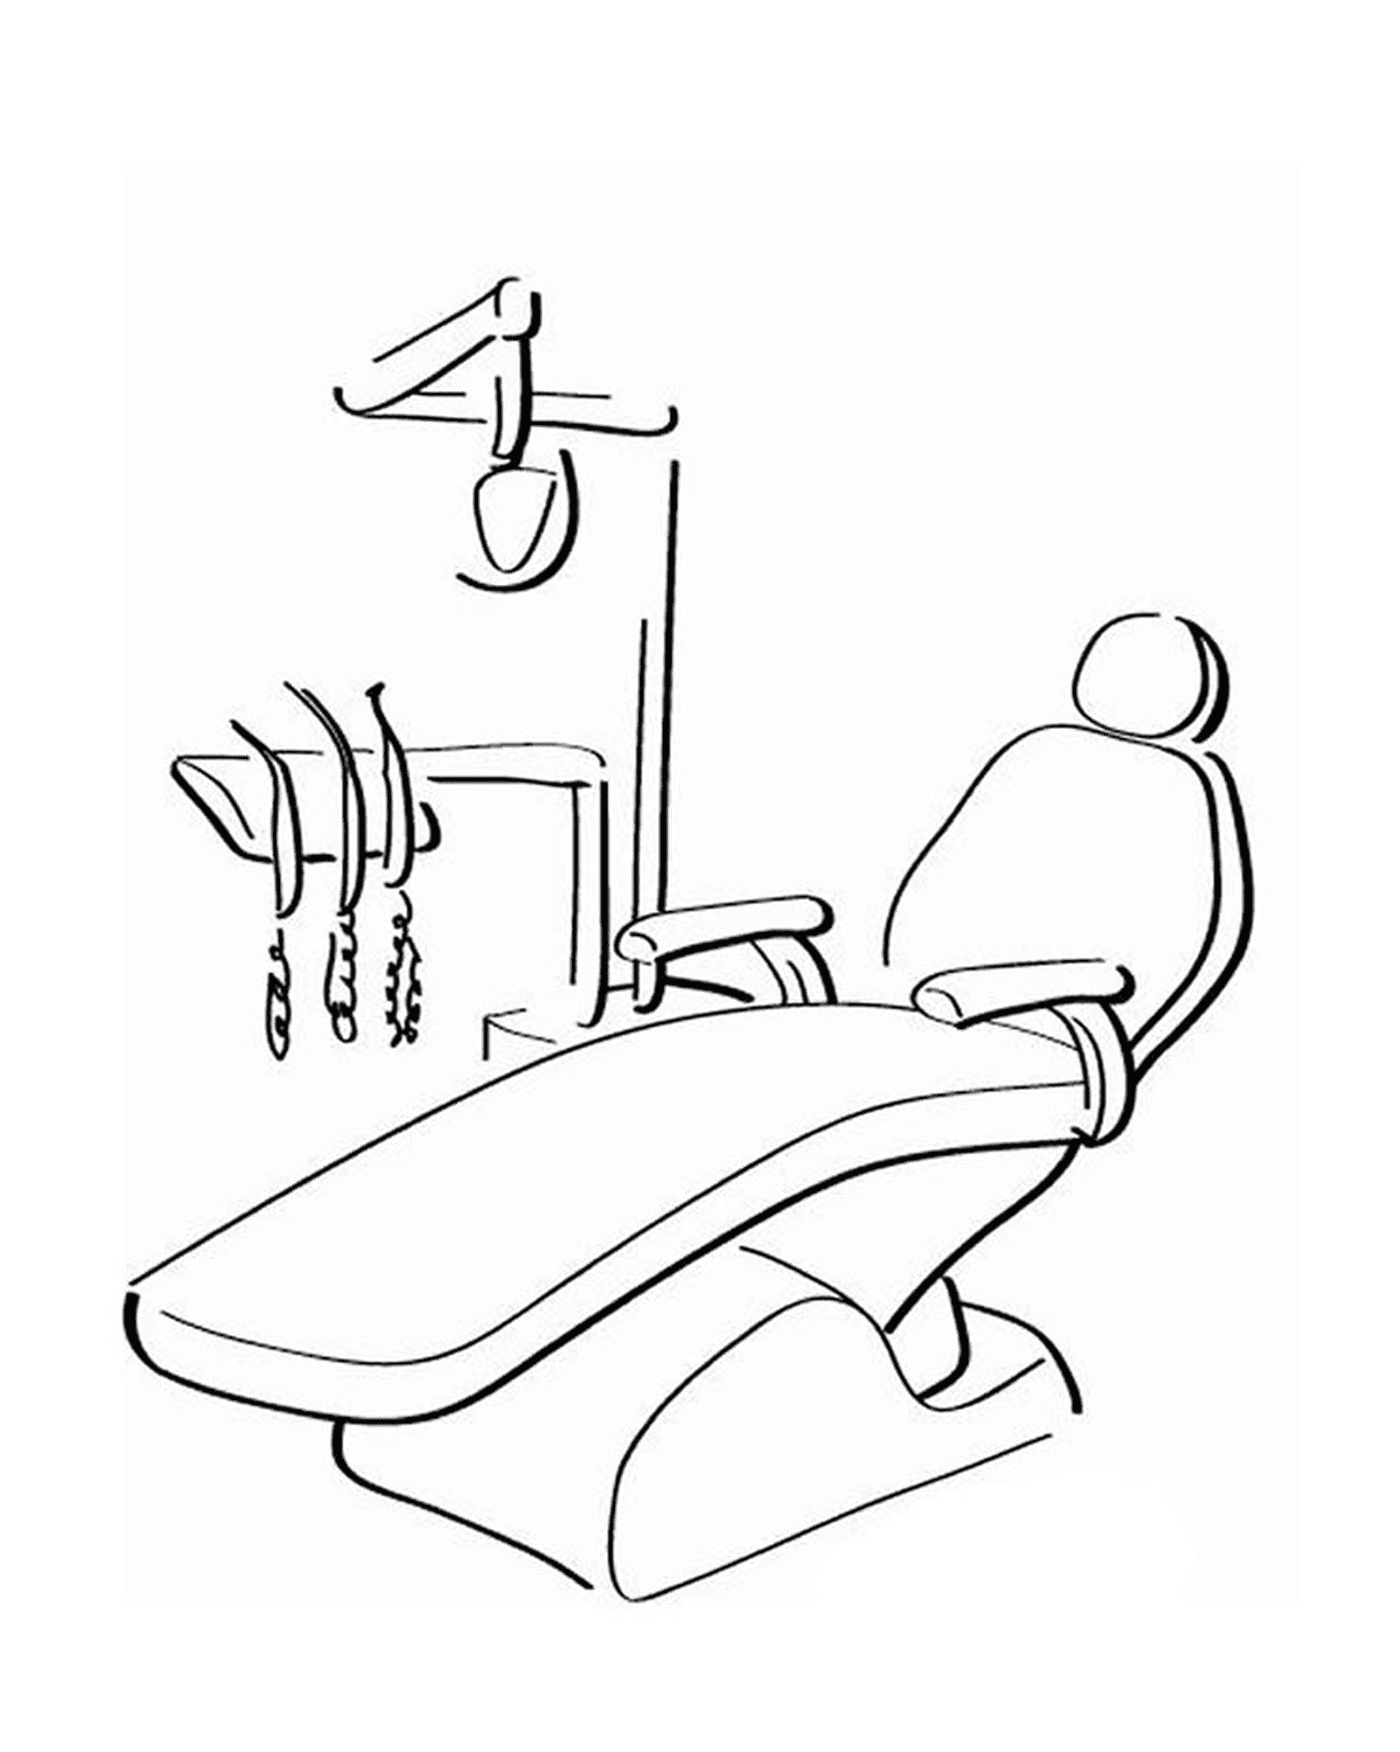  Escritório de um dentista com ferramentas 